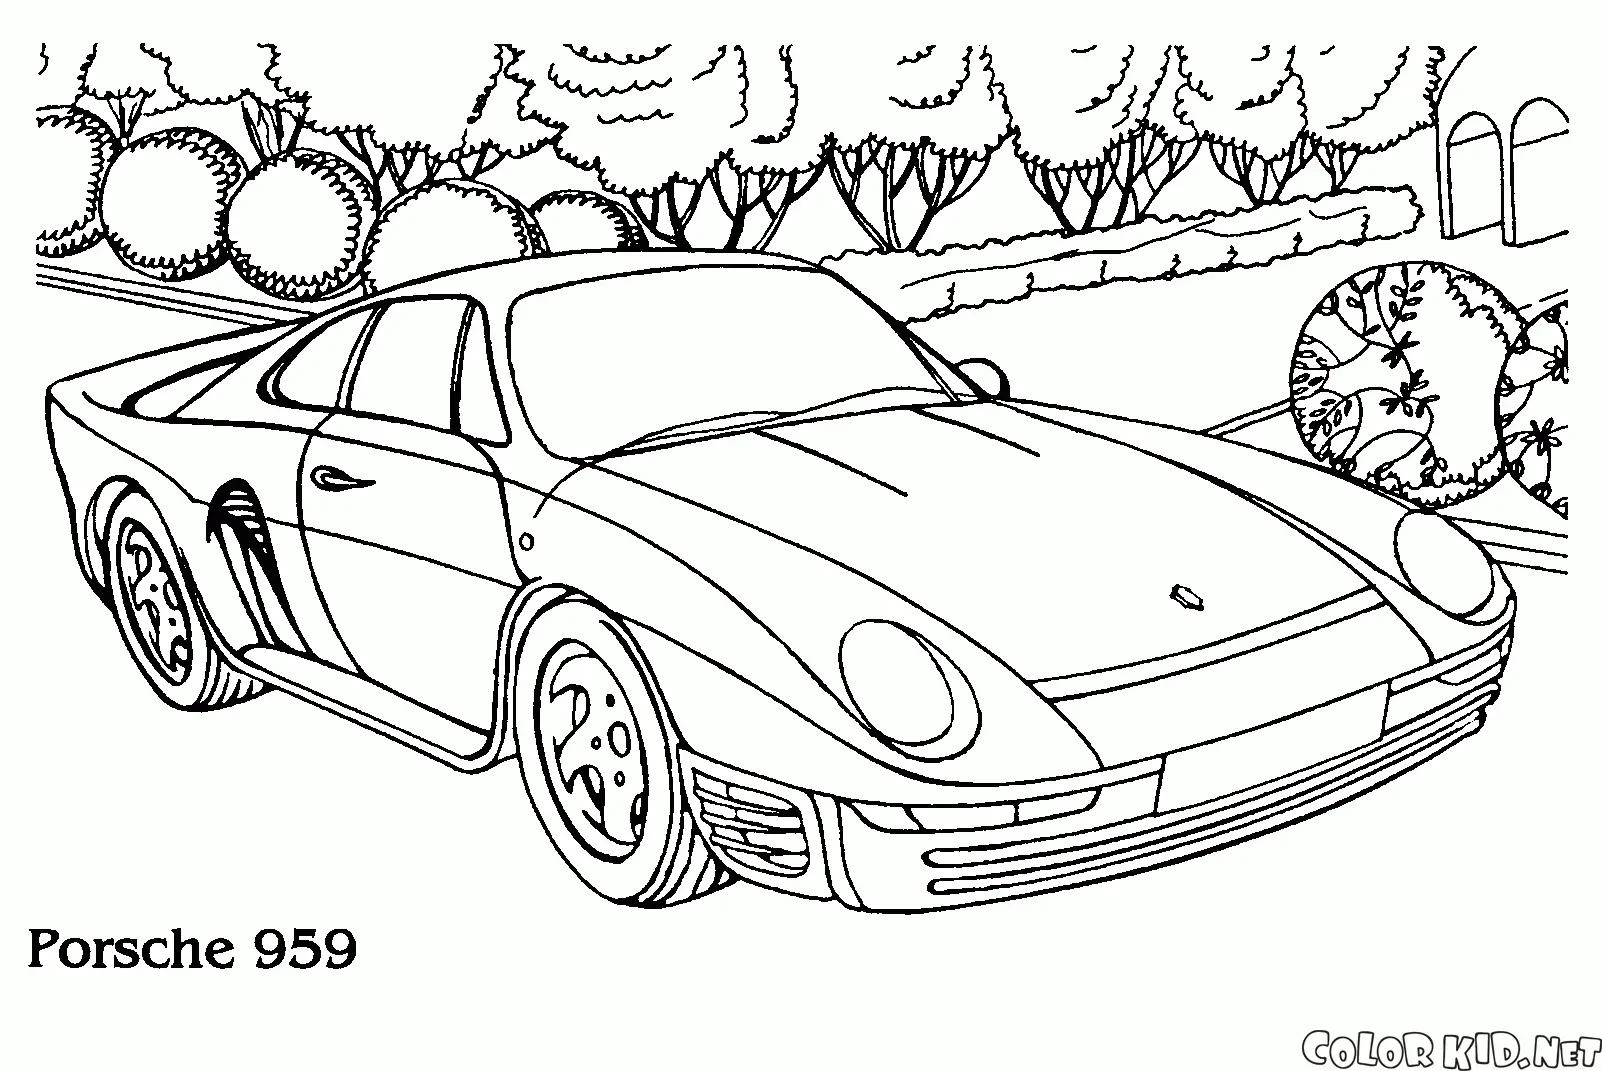 Porsche Coloring Pages